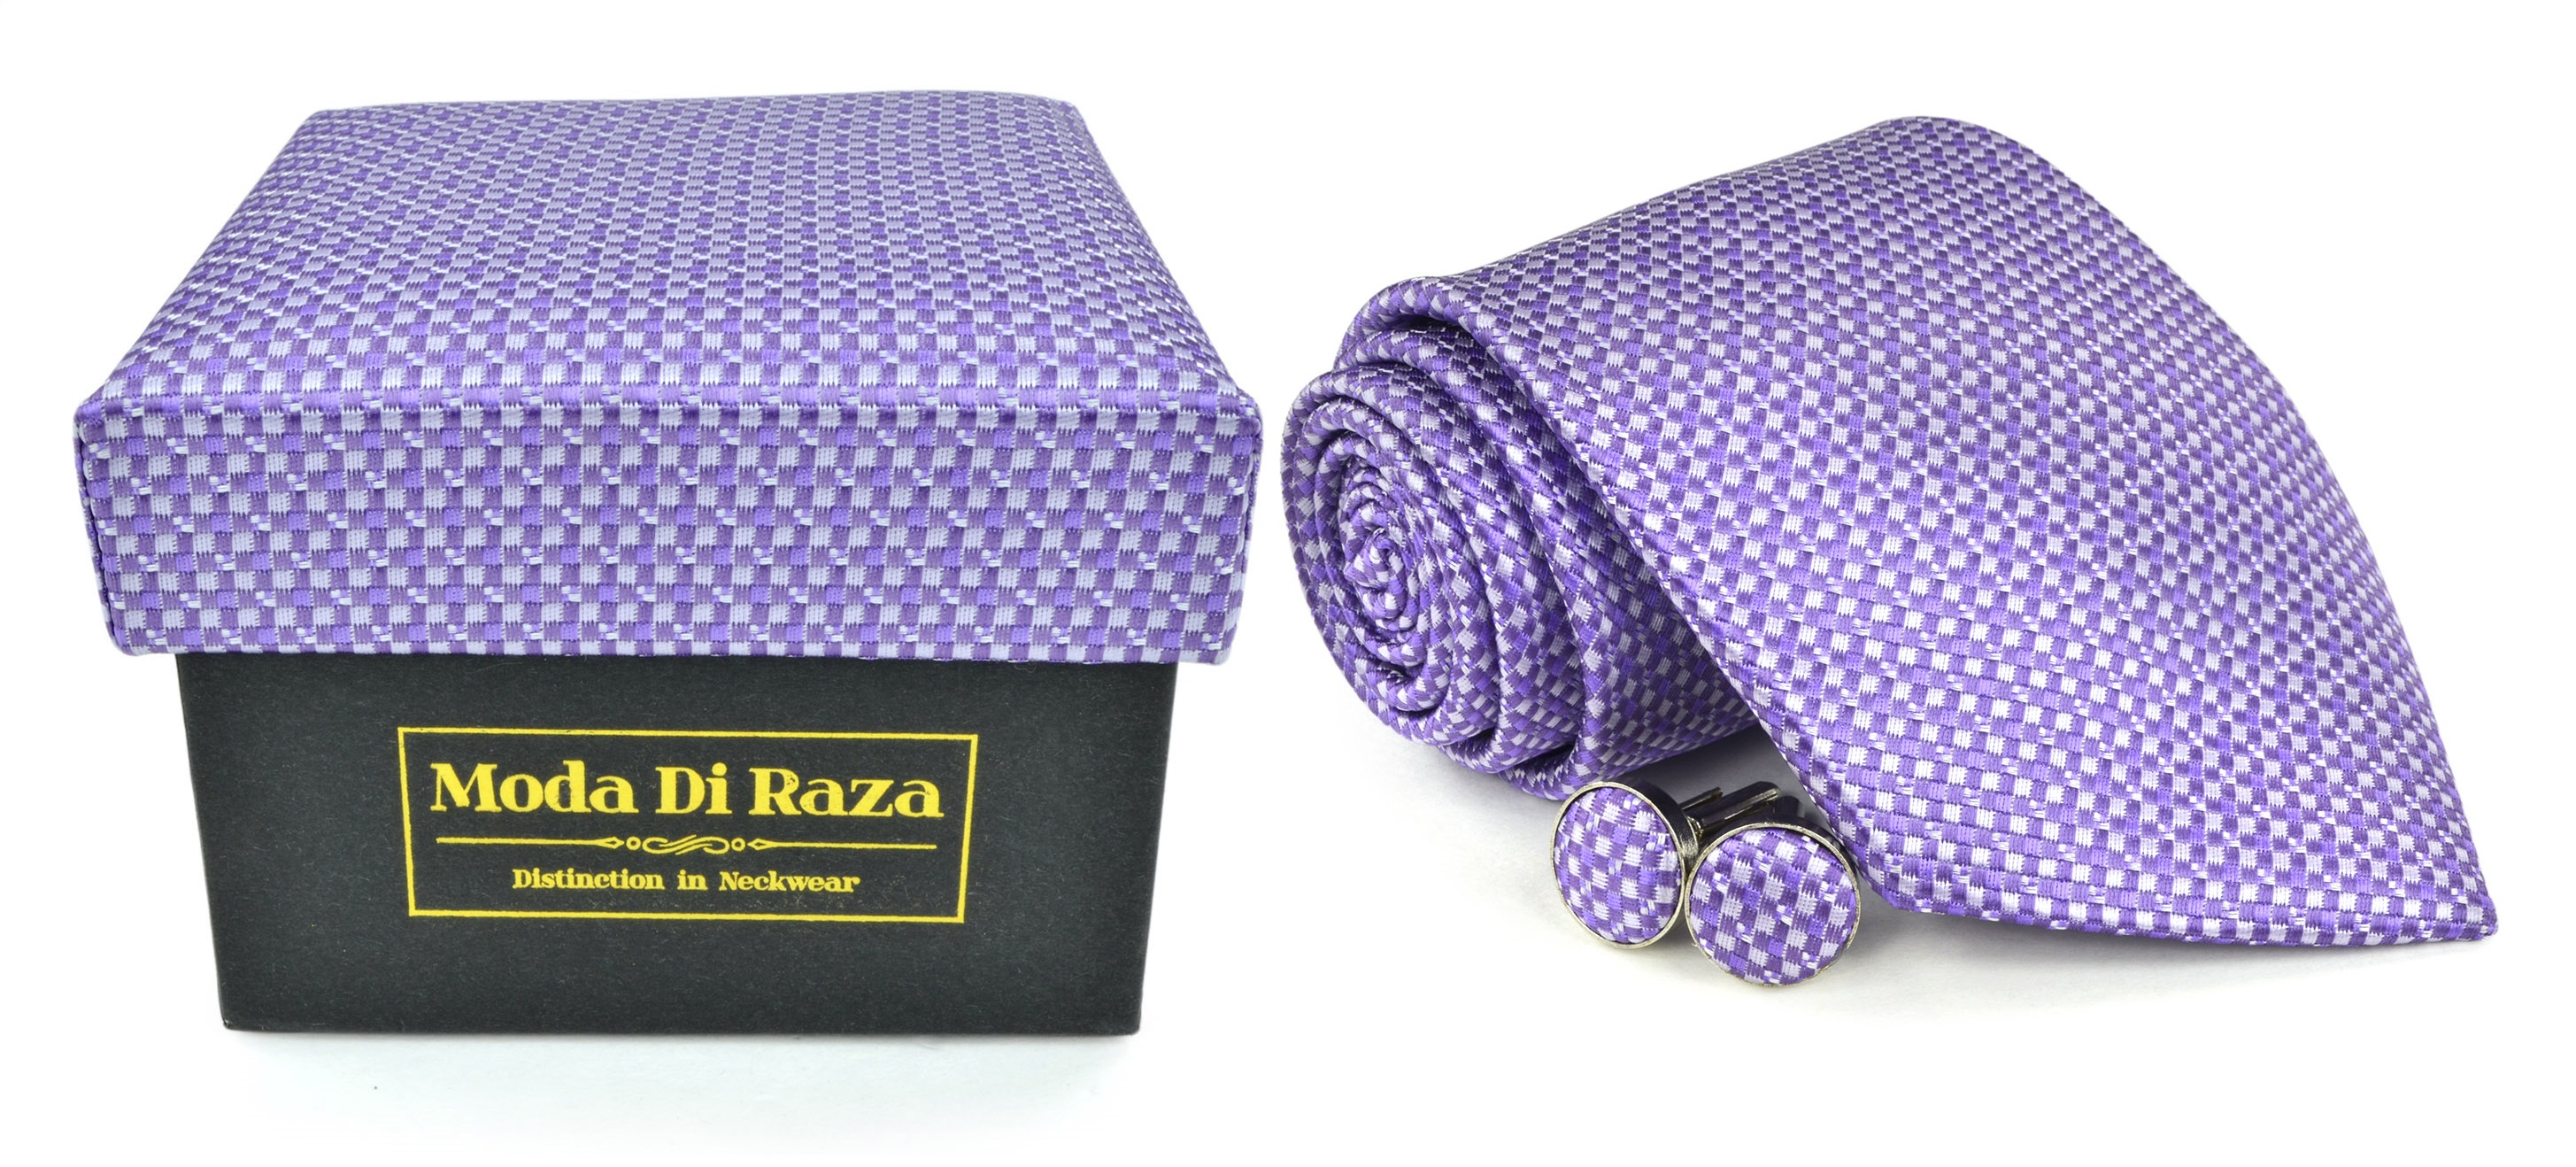 Moda Di Raza Men's NeckTie 3.0 With Cufflink n Gift Box Wedding Formal Events - Dark Purple